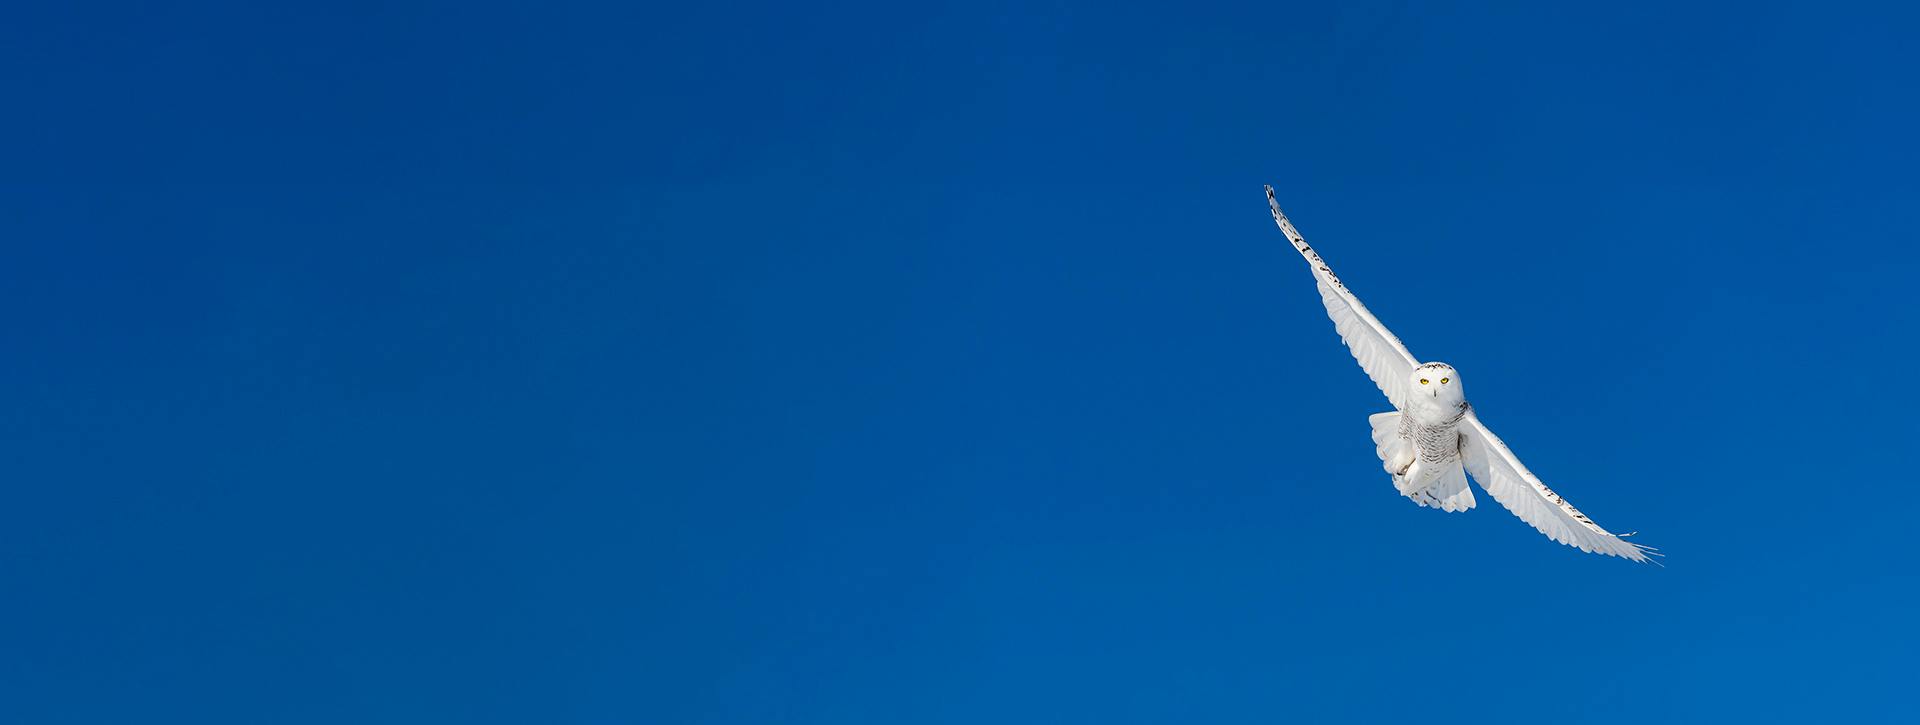 snowy owl in flight against blue sky